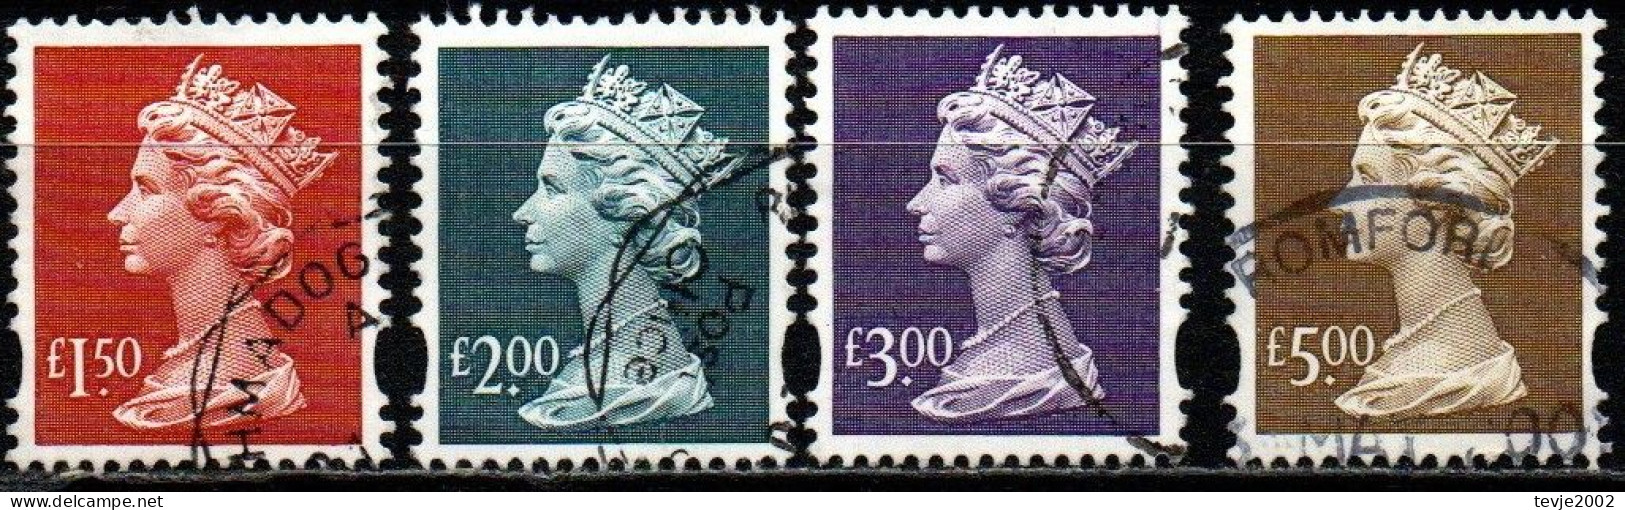 Großbritannien 1999 - Mi.Nr. 1793 - 1796 - Gestempelt Used - Machin - Série 'Machin'